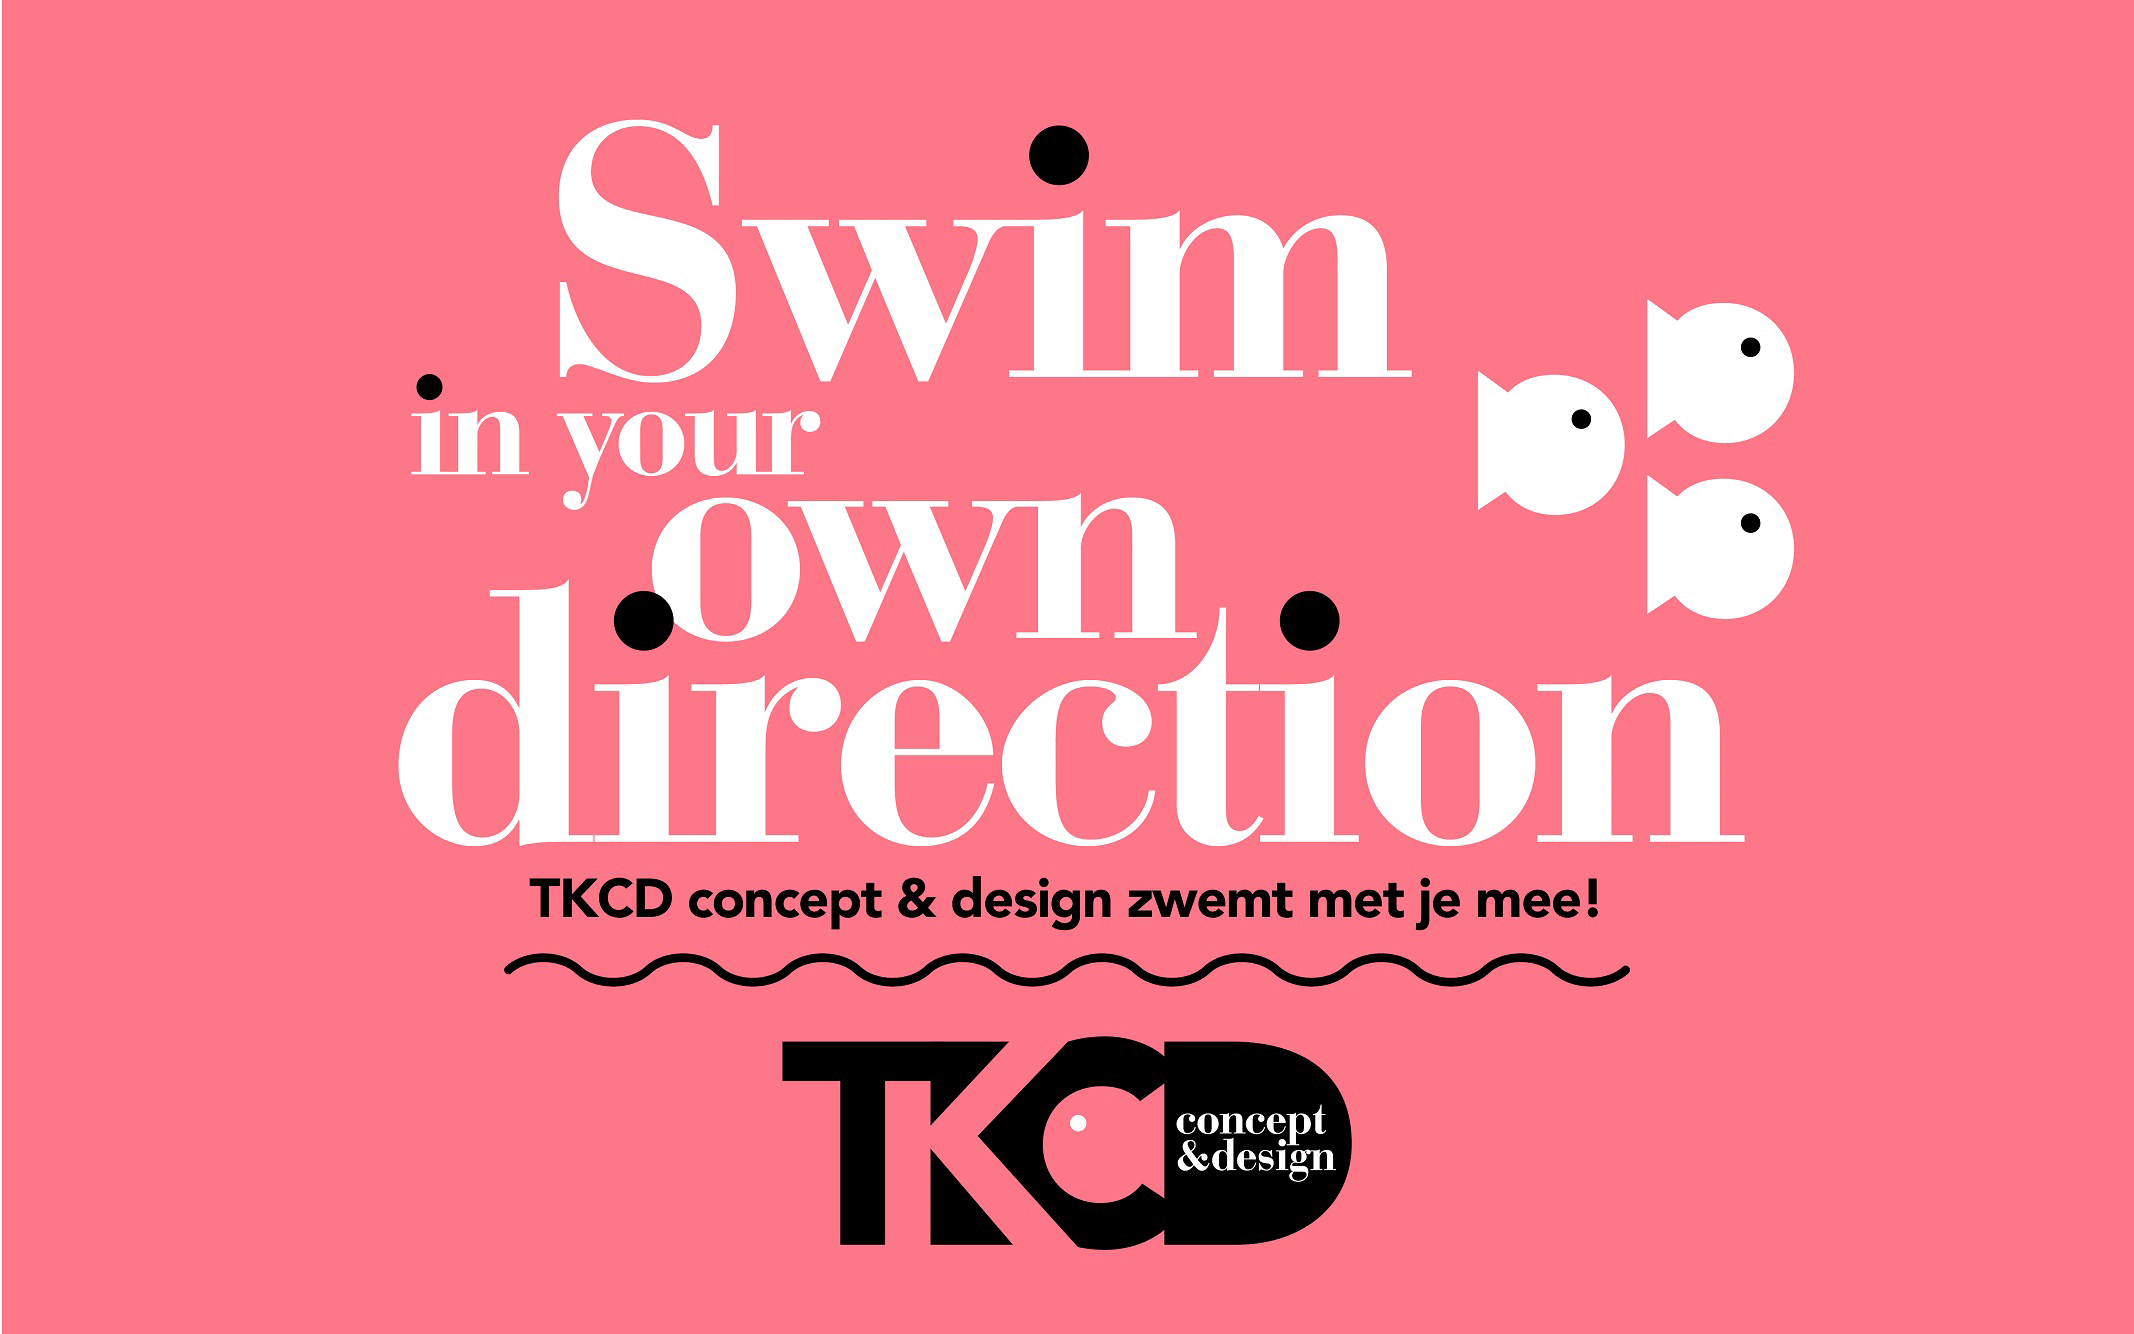 TKCD concept & design zwemt met je mee!